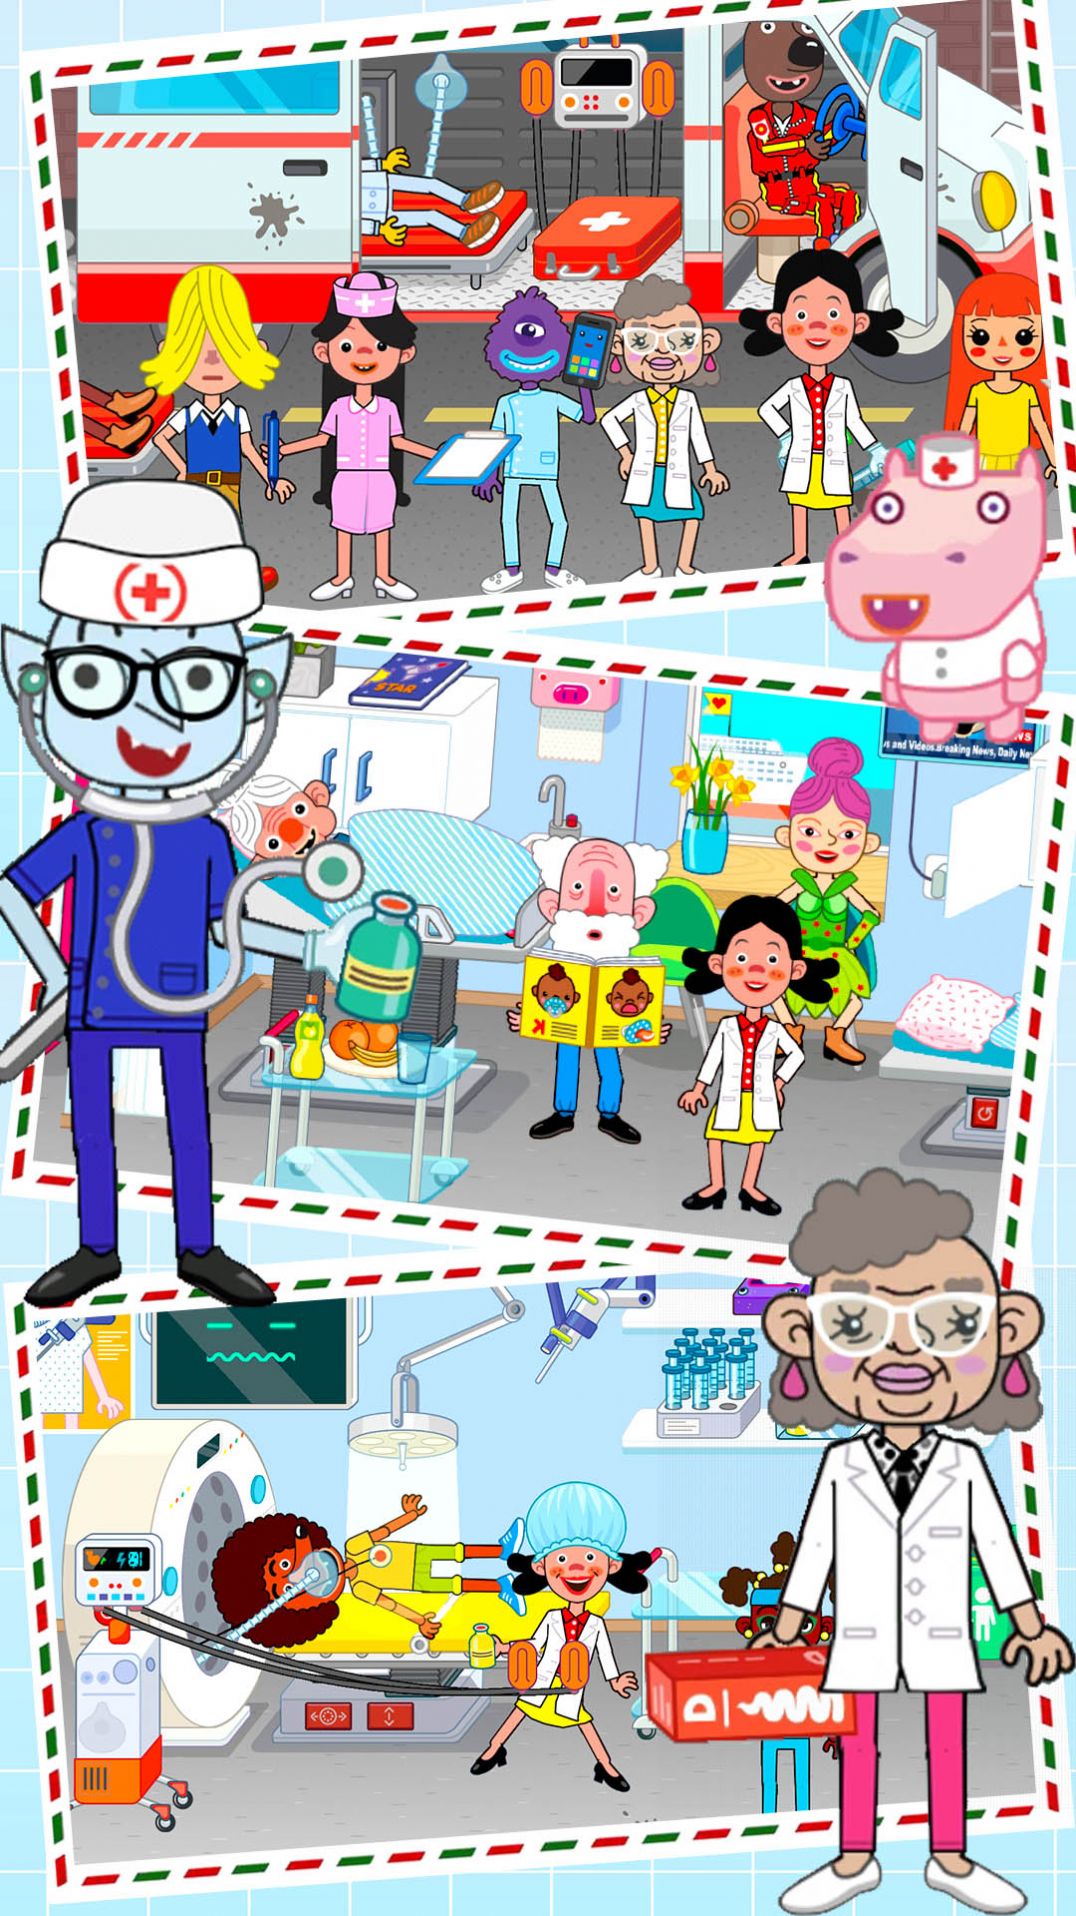 米加小镇世界医院游戏下载,米加小镇世界医院游戏官方版 v1.0